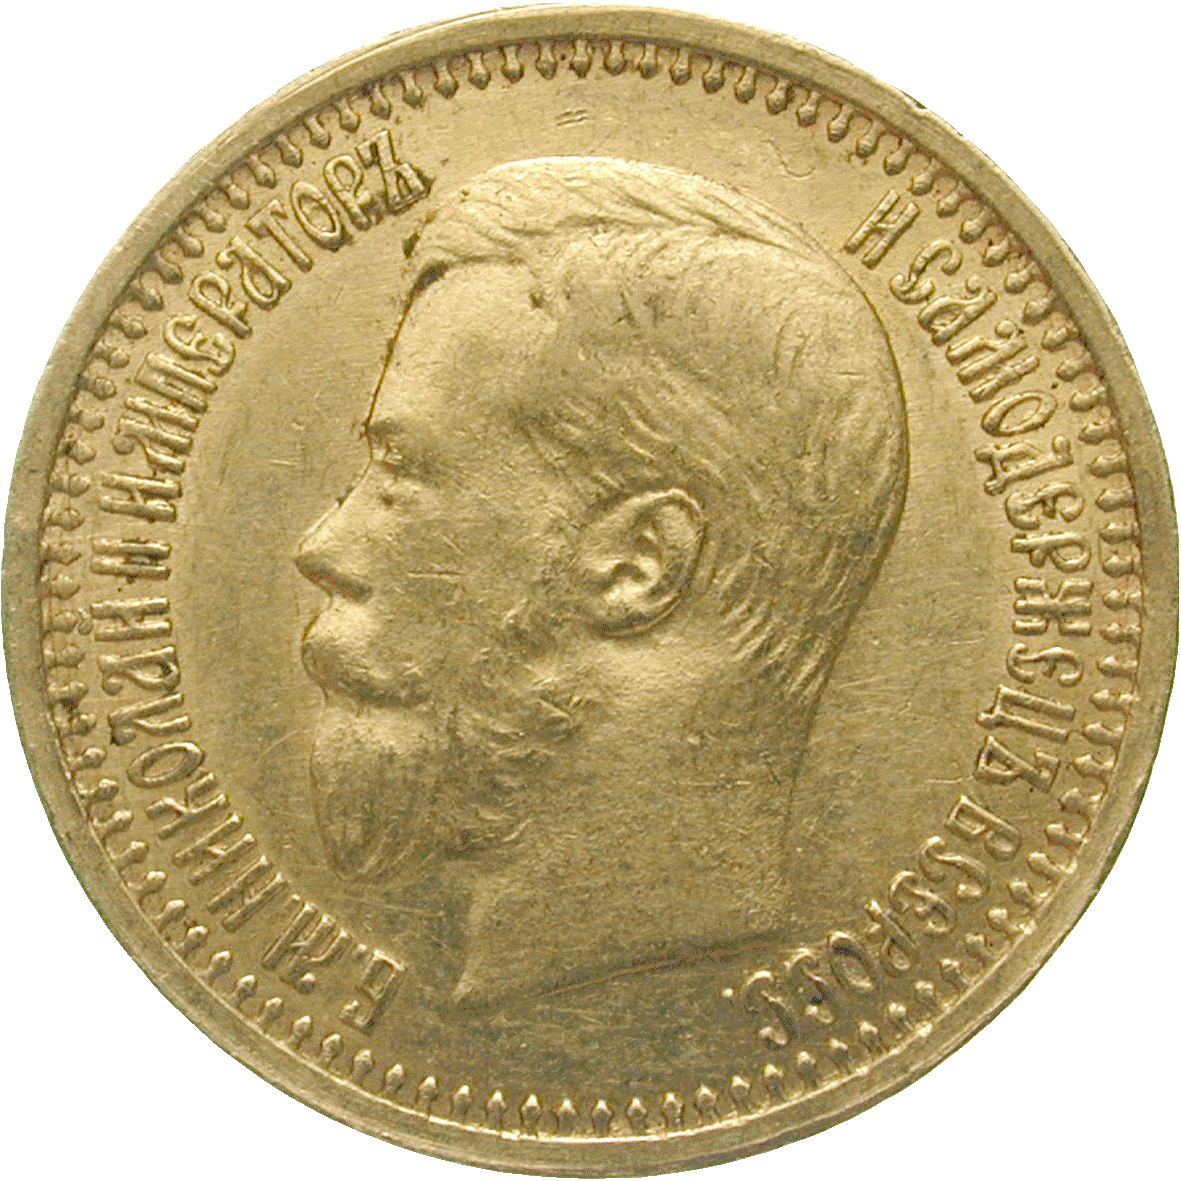 Zarenreich Russland, Nikolaus II., 7 Rubel 50 Kopeken 1897 (obverse)